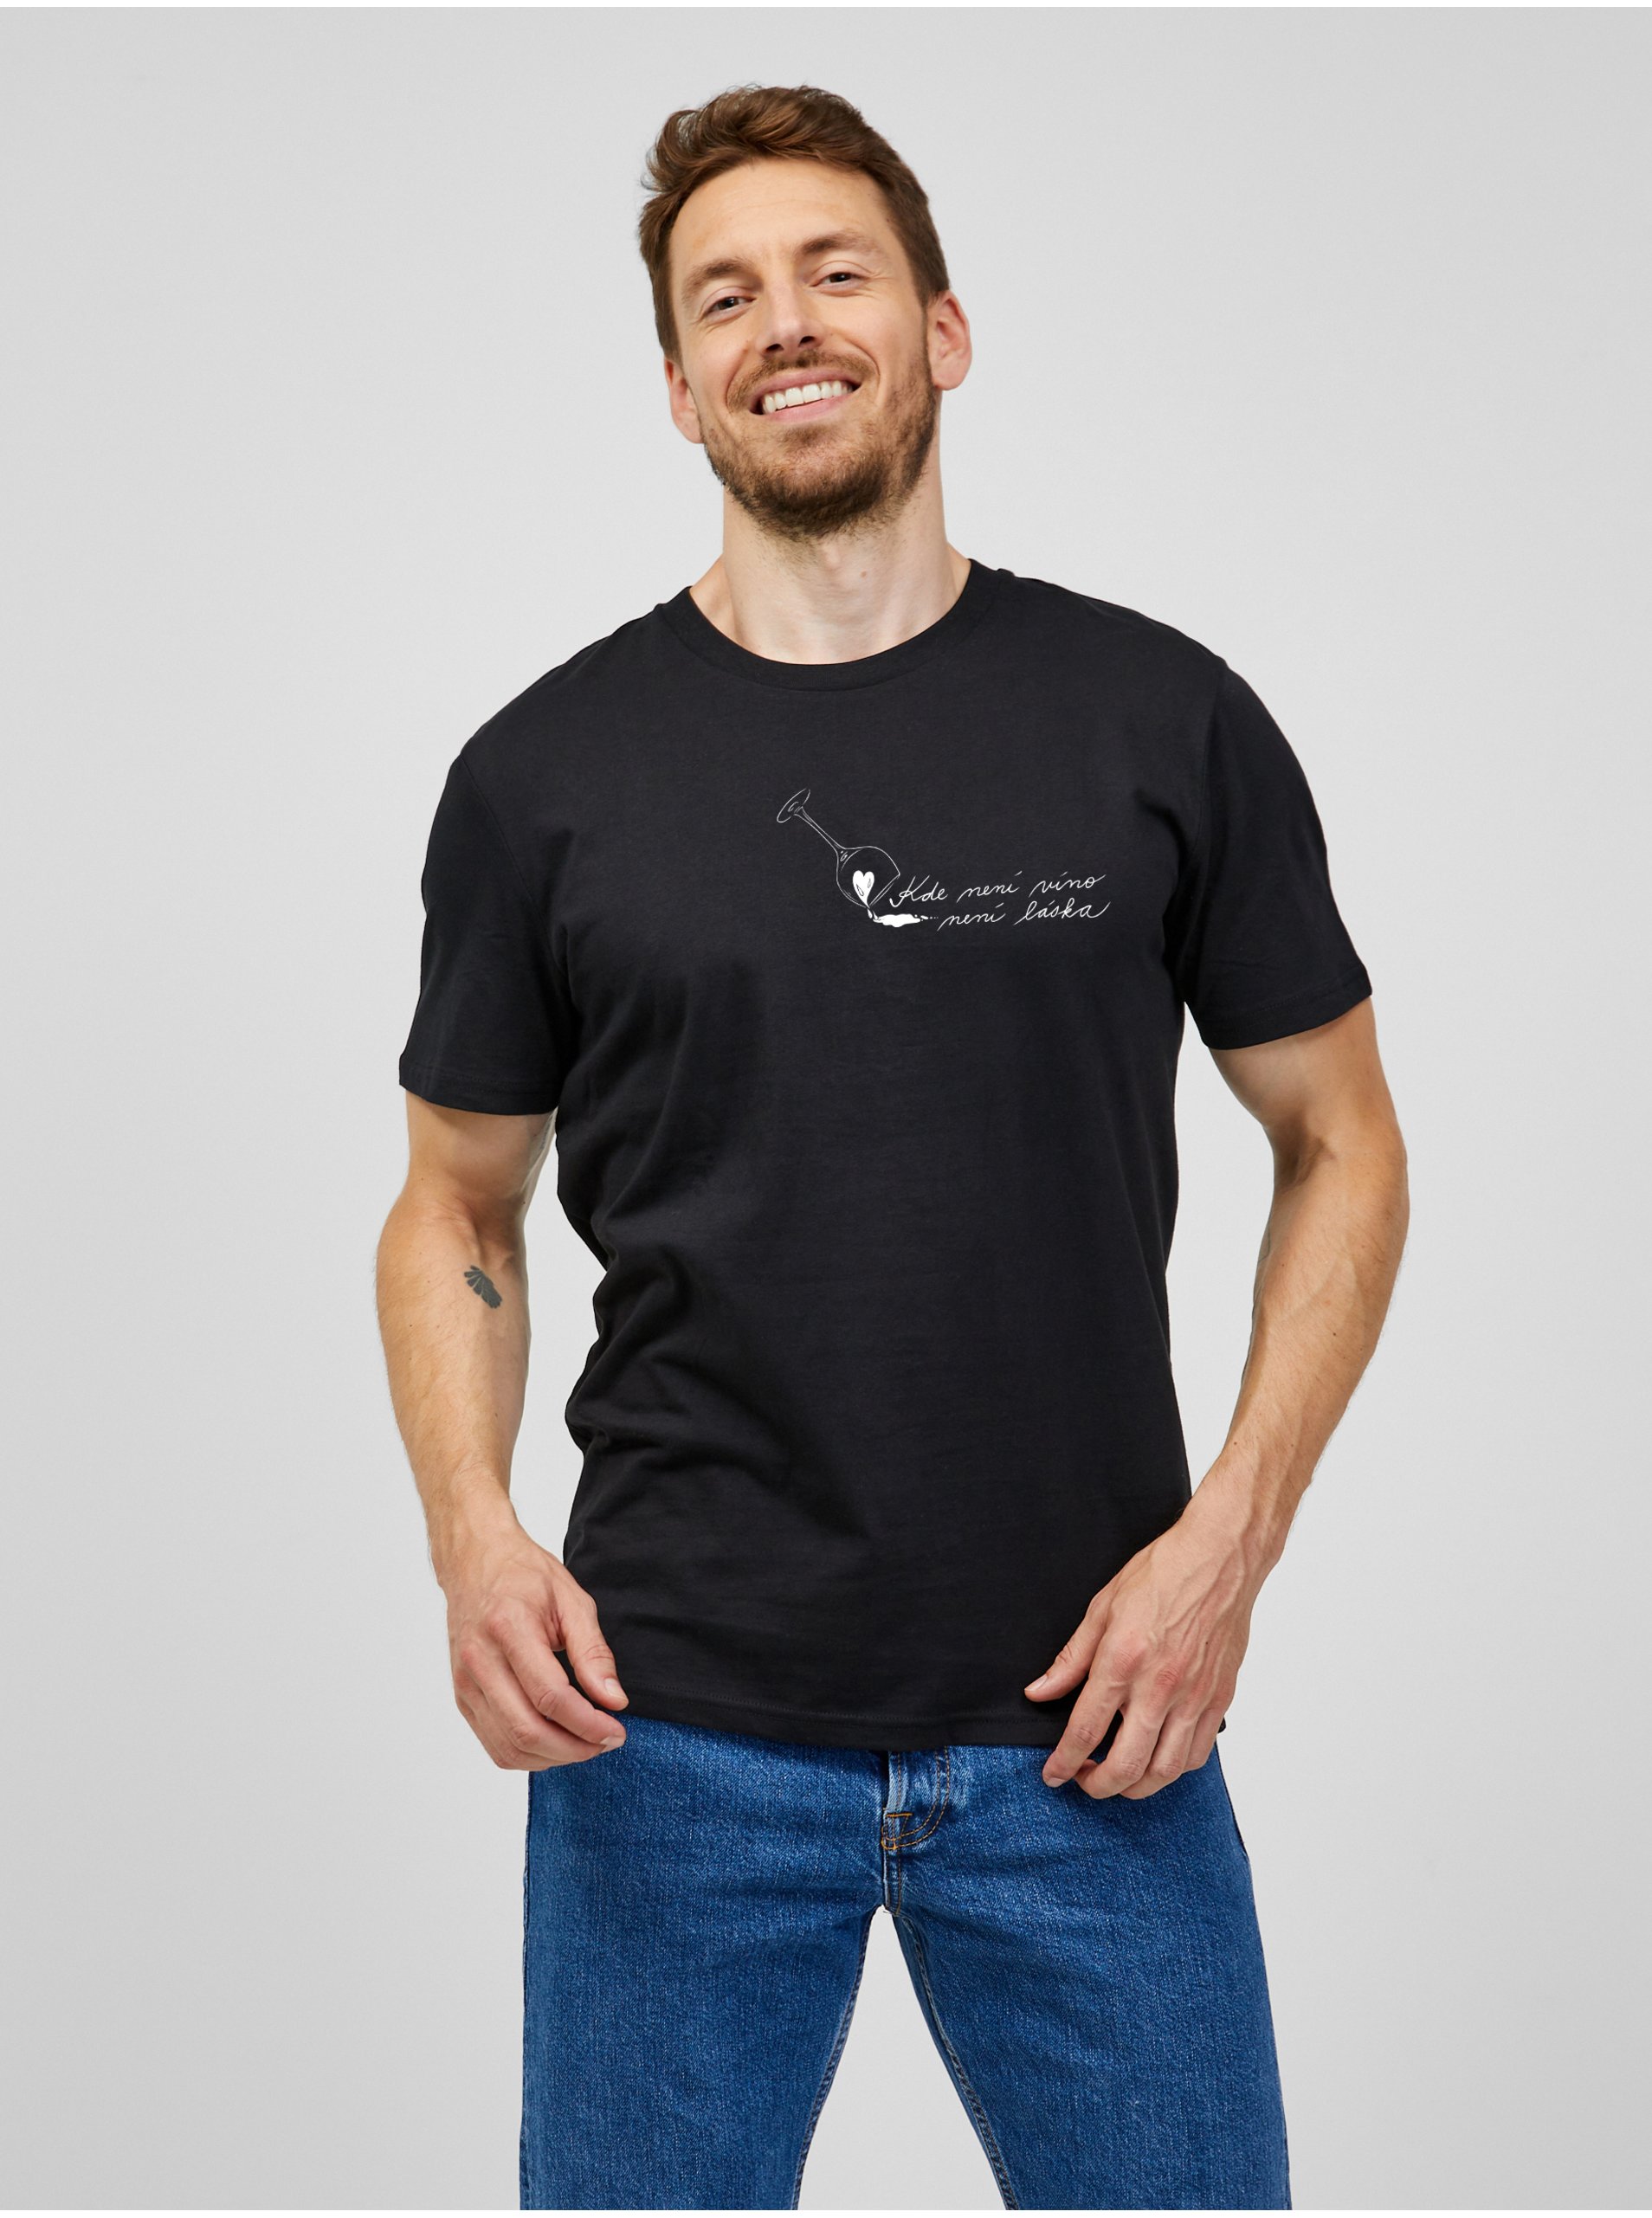 E-shop Černé pánské tričko Zoot Original Kde není víno